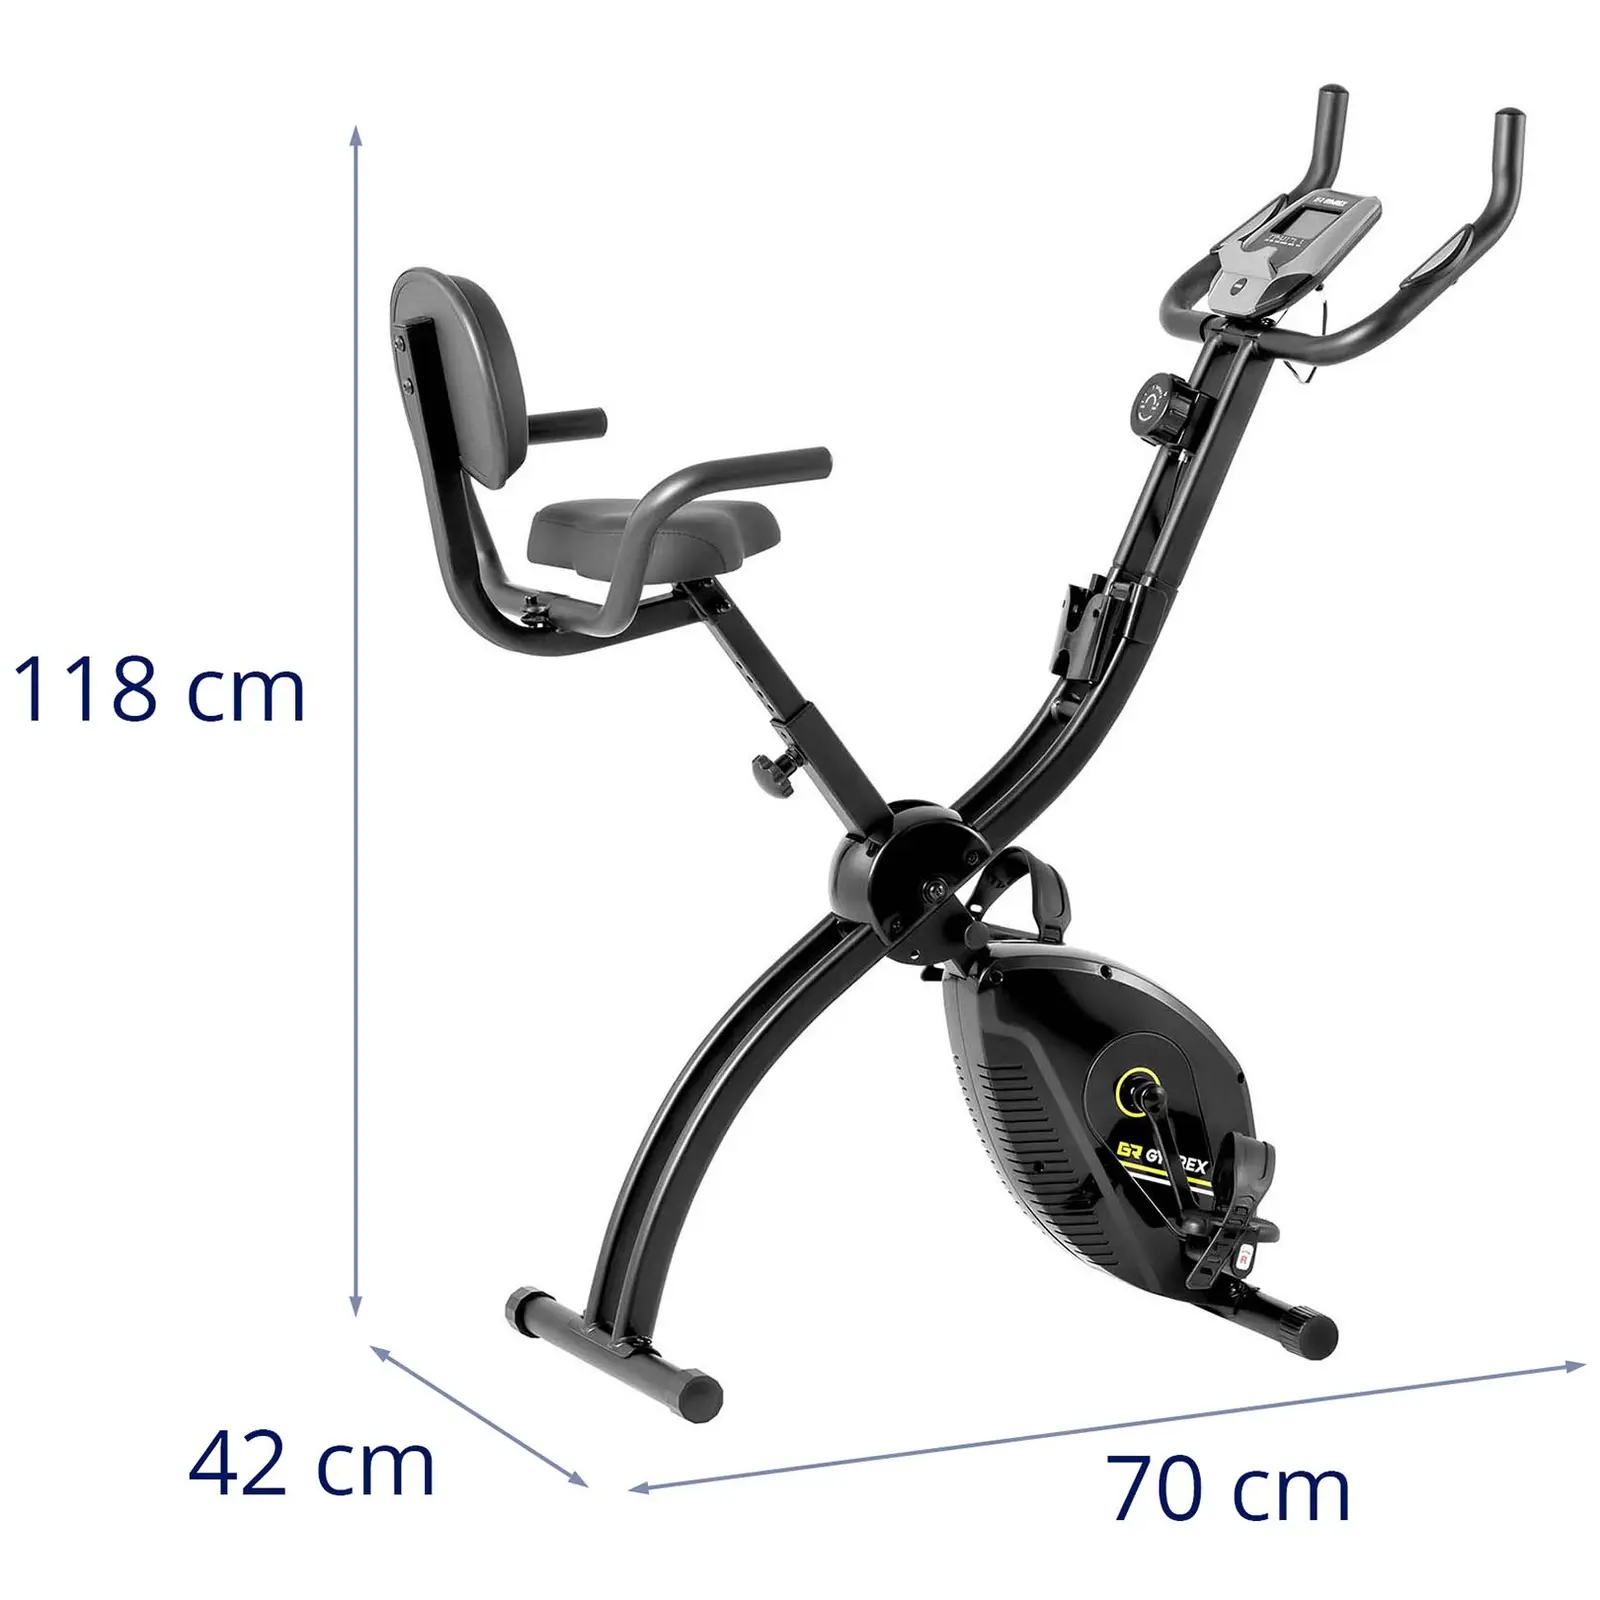 Cyclette professionale richiudibile con schienale e impugnatura aggiuntiva - Nera/rossa - 8